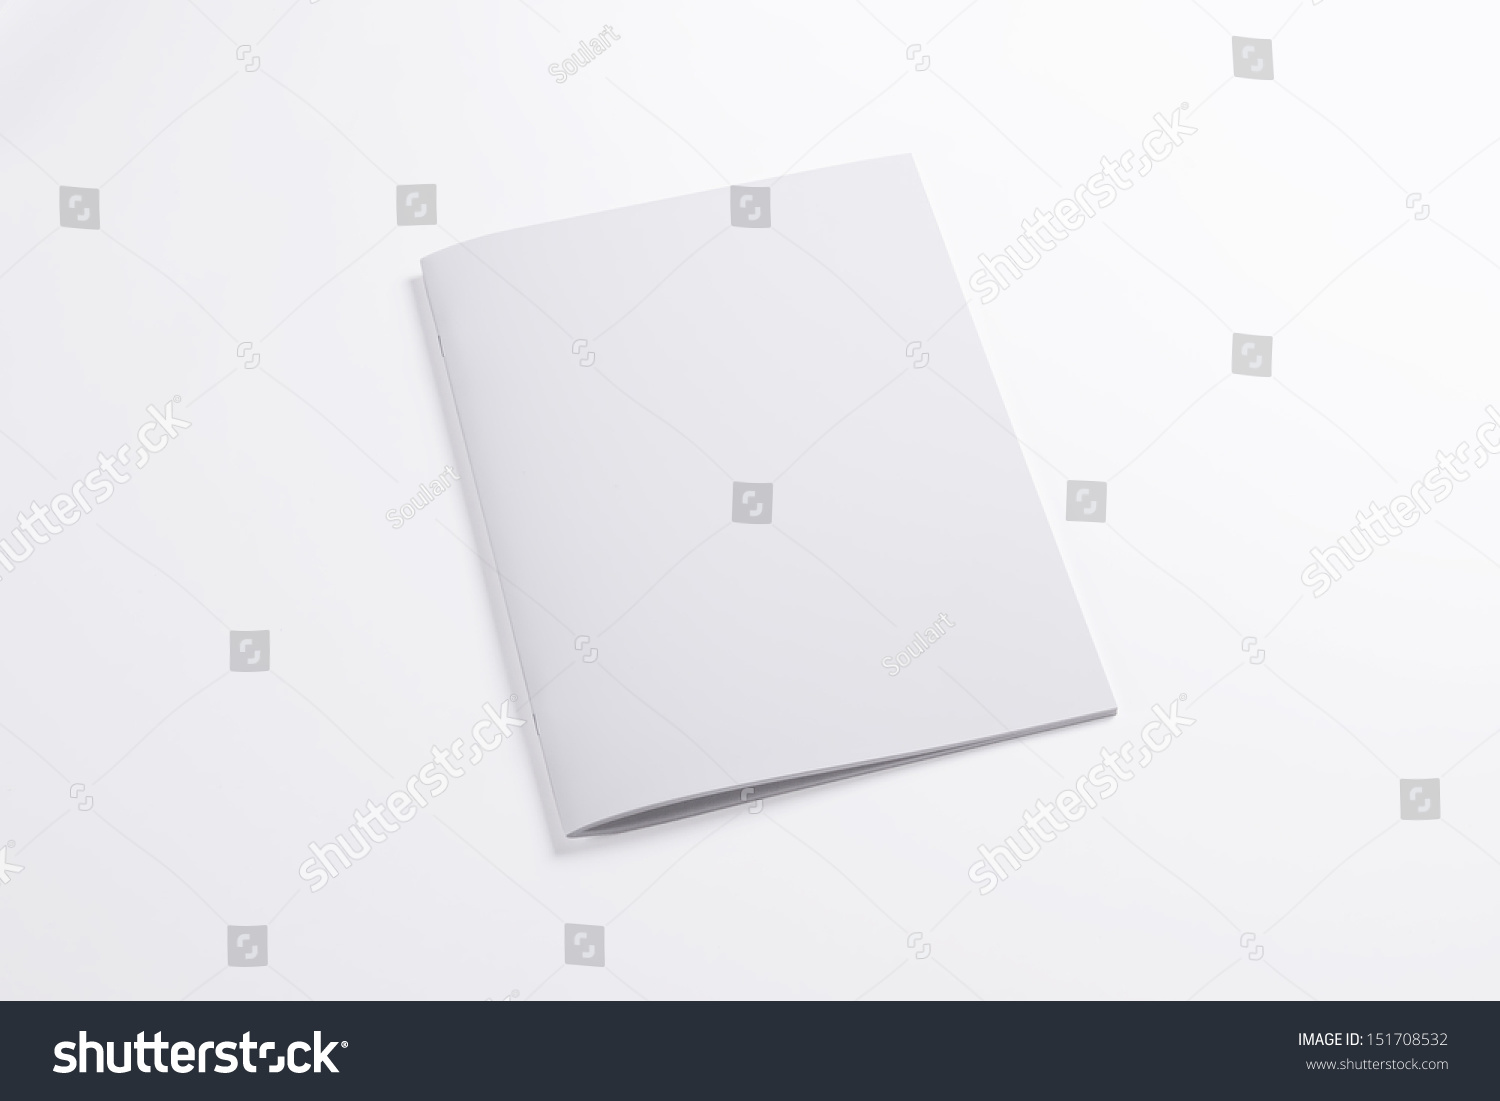 Blank closed magazine isolated on white background #151708532